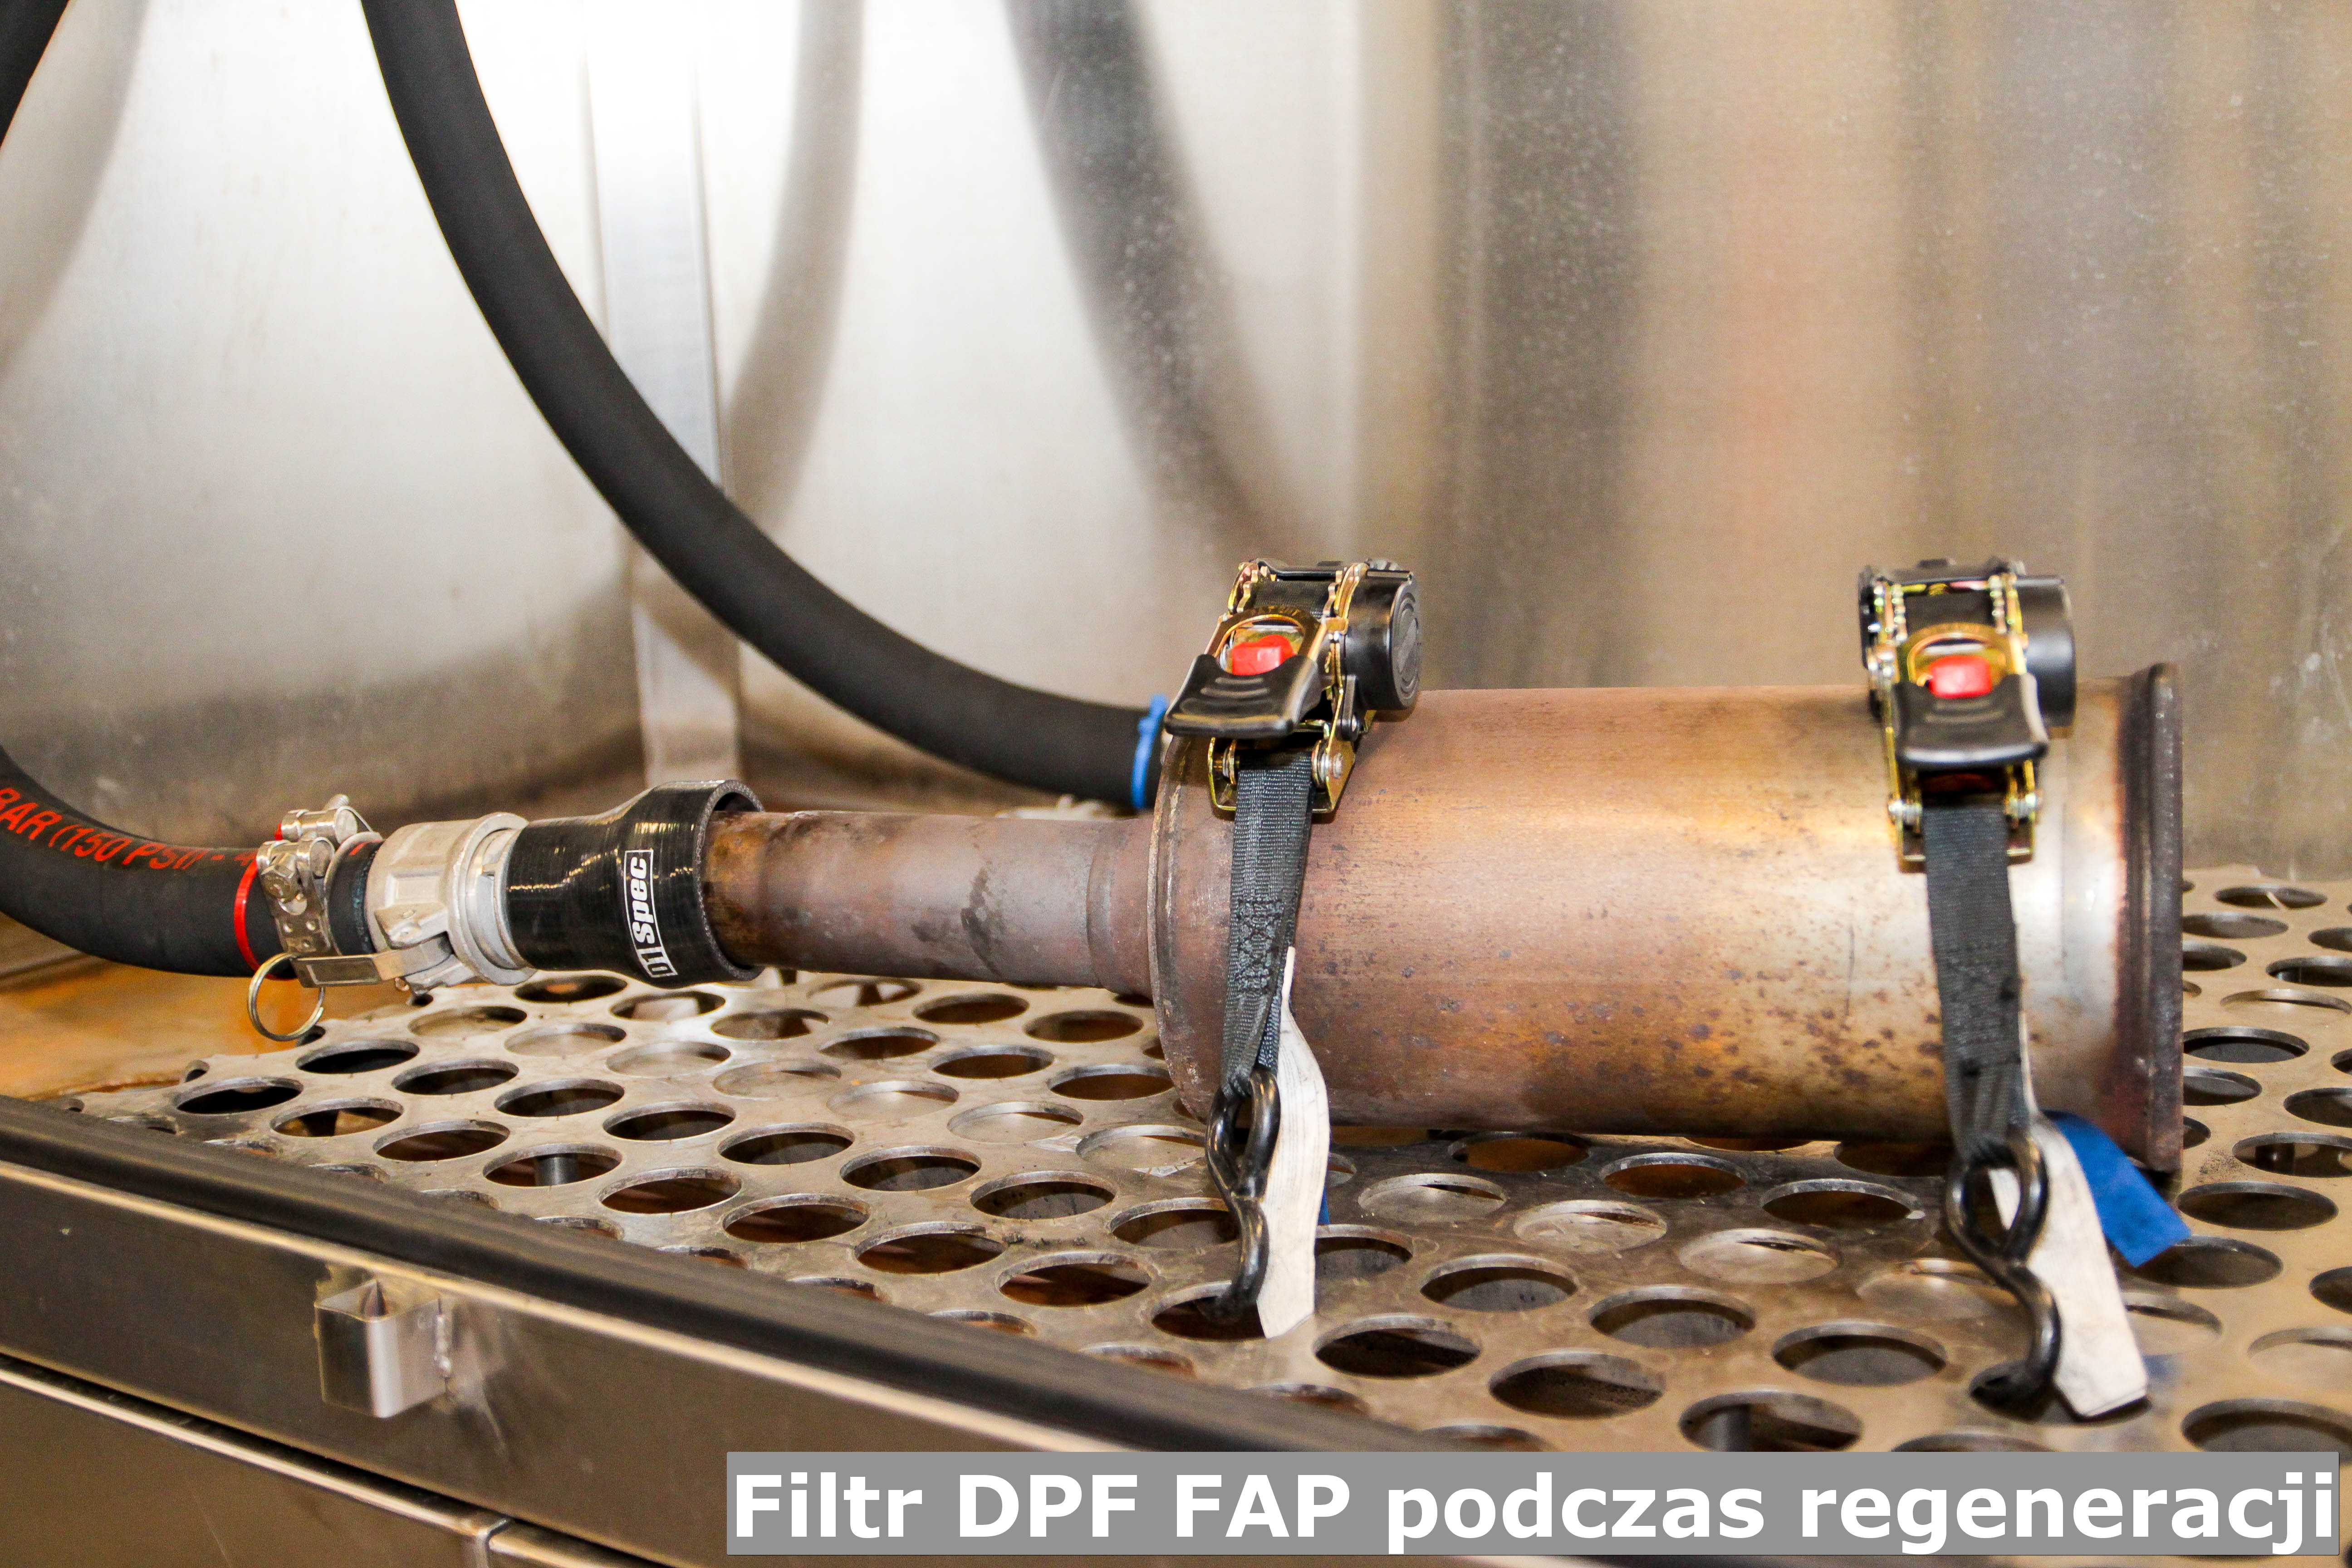 Budowa filtrów DPF i FAP oraz katalizatorów samochodowych